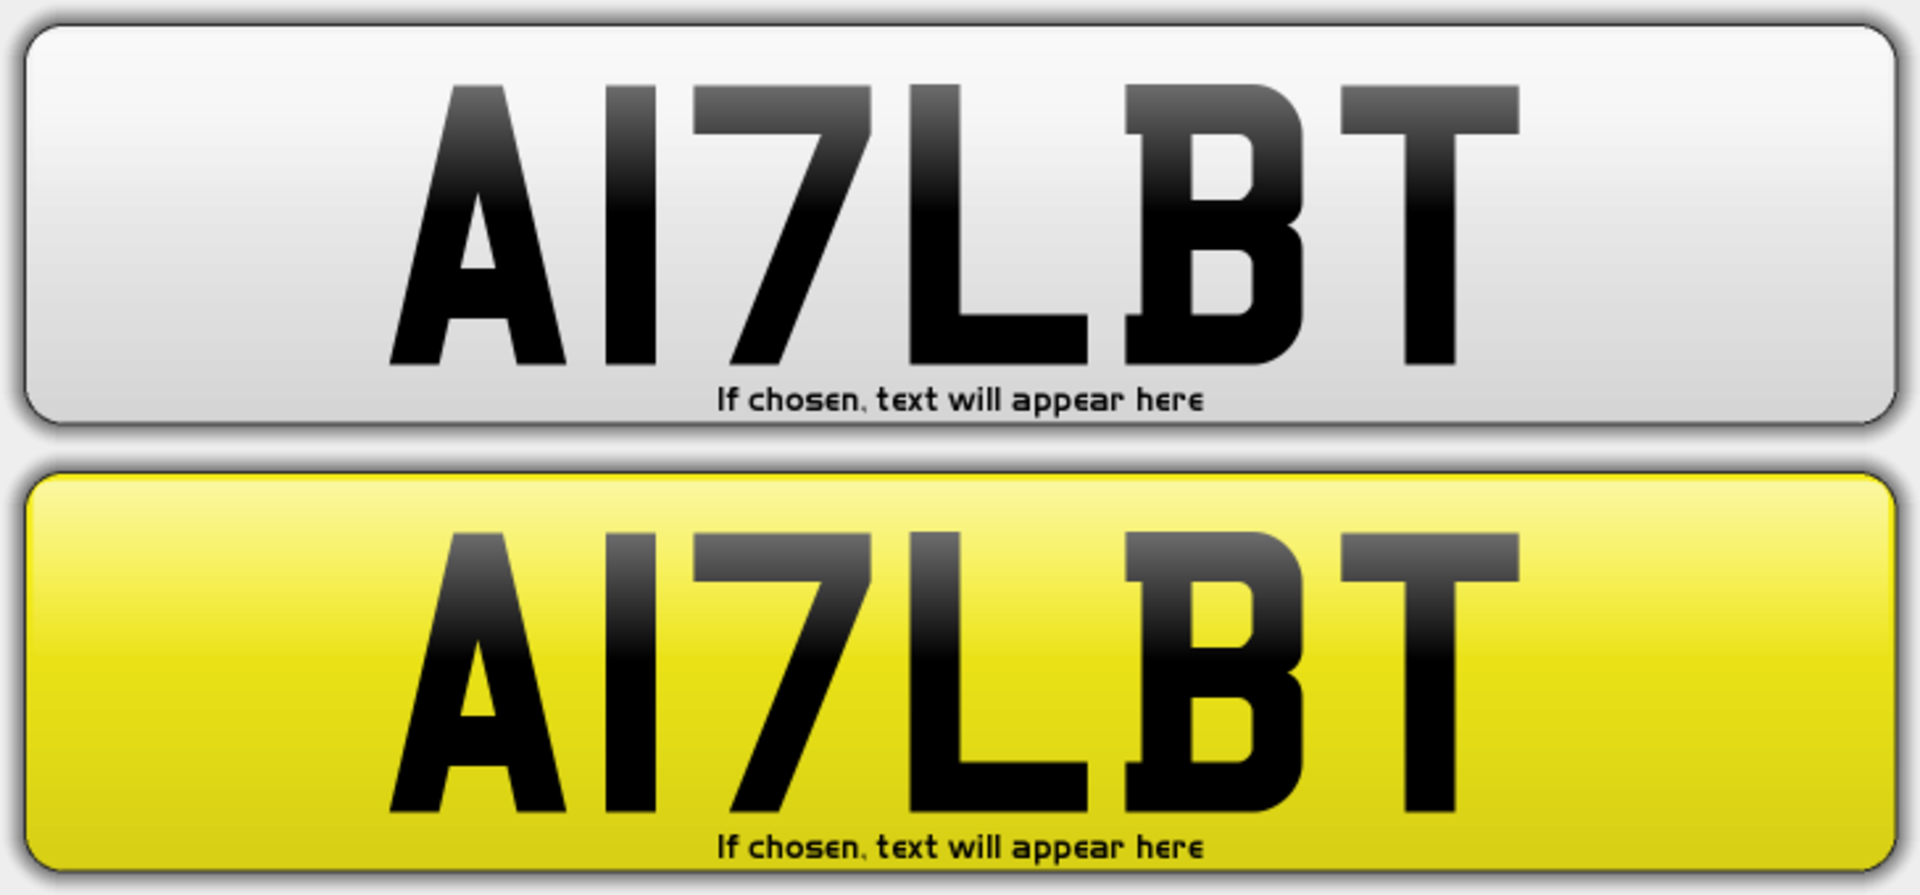 Cherished vehicle registration number: A17 LBT cur